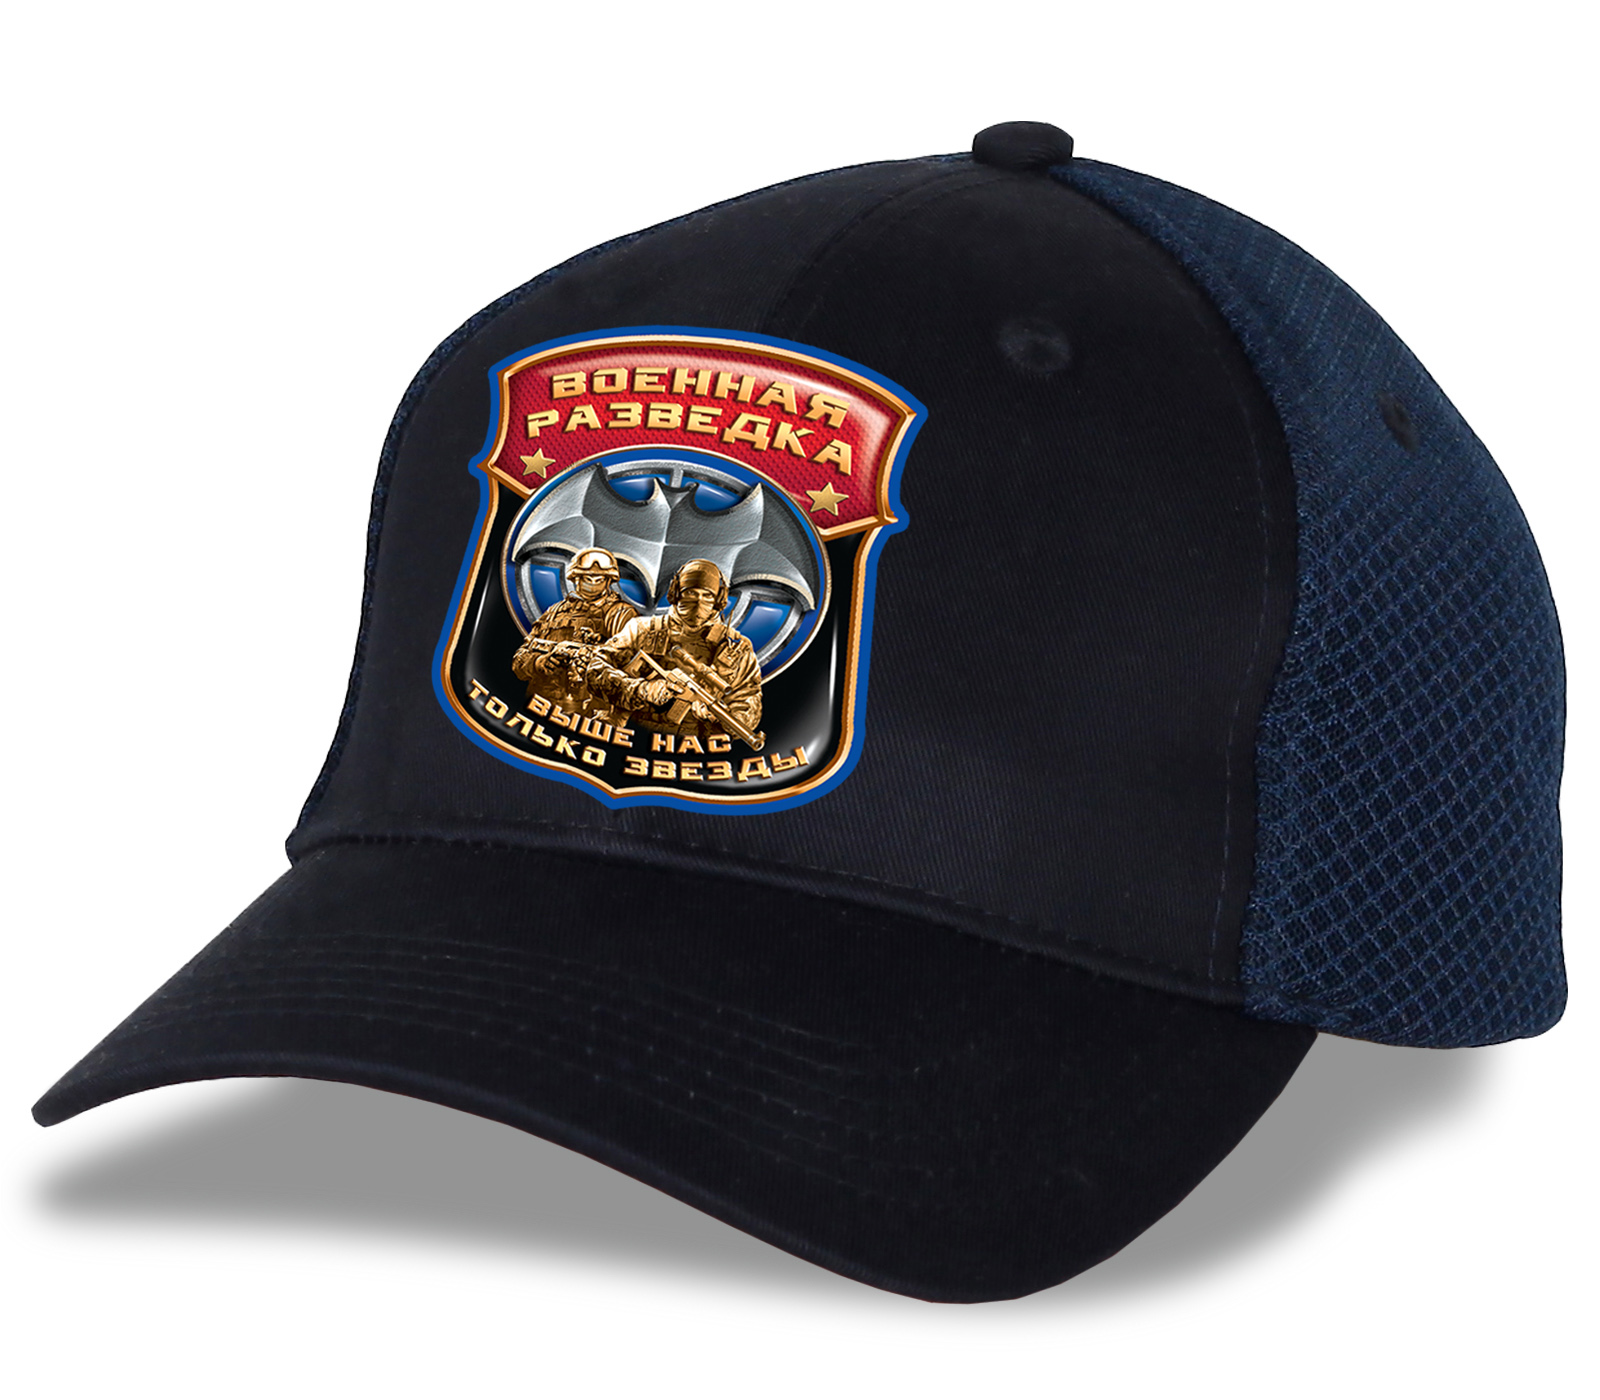 Качественная кепка с эмблемой Военной разведки - продуманный головной убор для тех, кто в теме №тр807